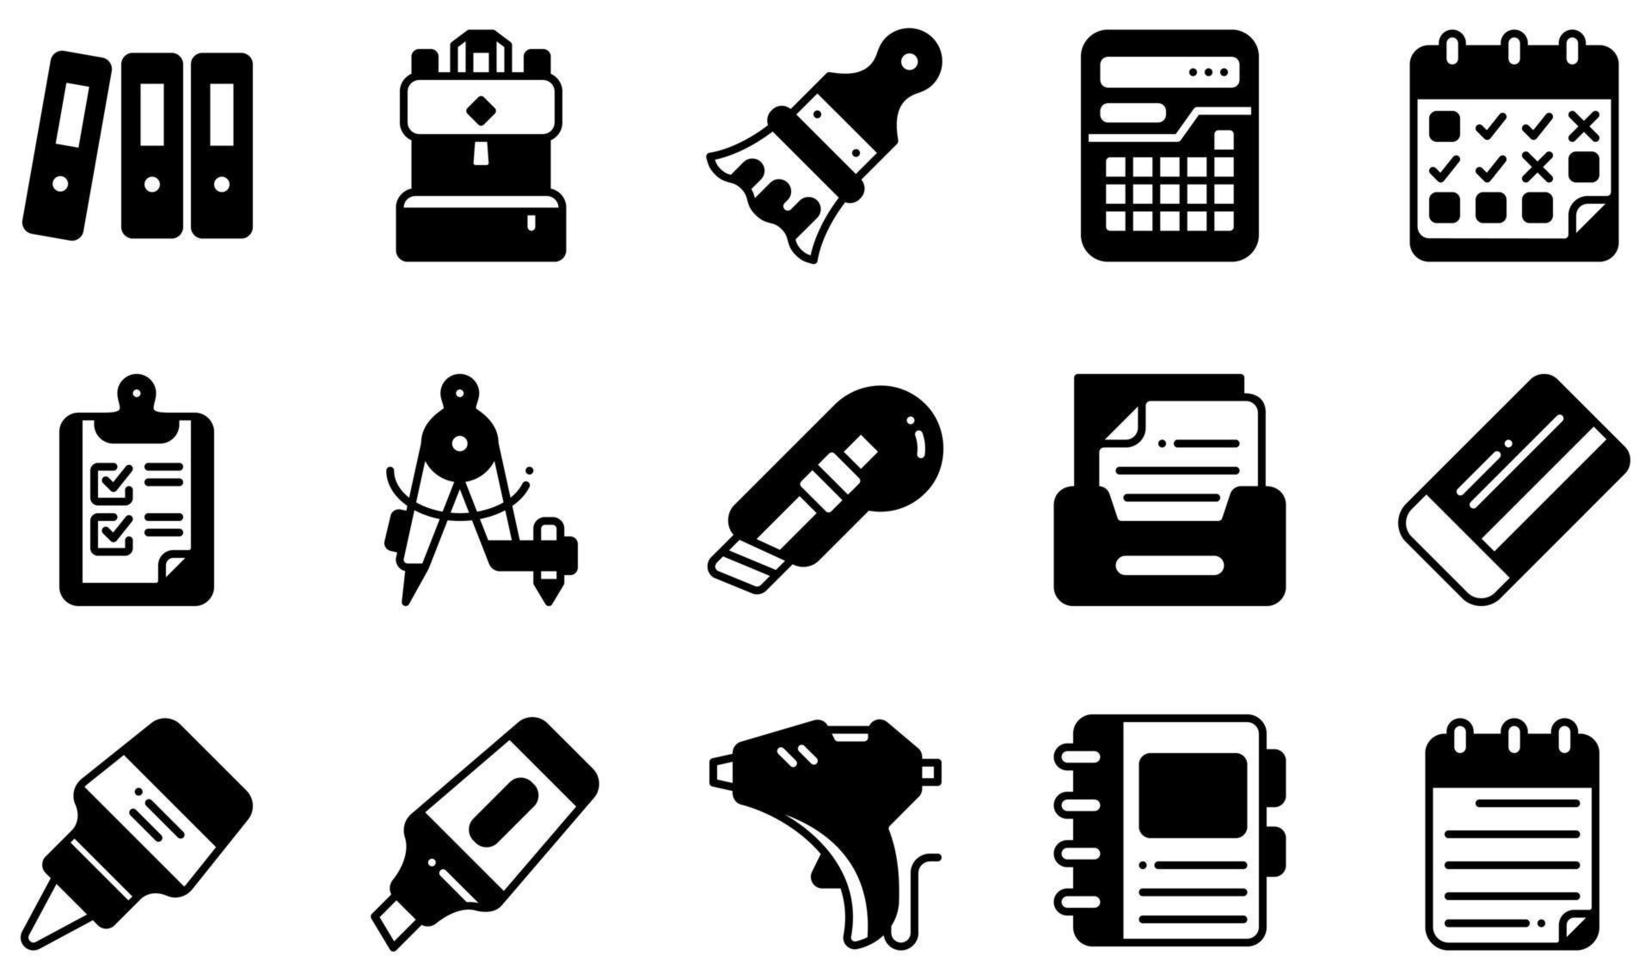 set di icone vettoriali relative alla cancelleria. contiene icone come archivi, zaino, calcolatrice, appunti, taglierina, colla e altro ancora.